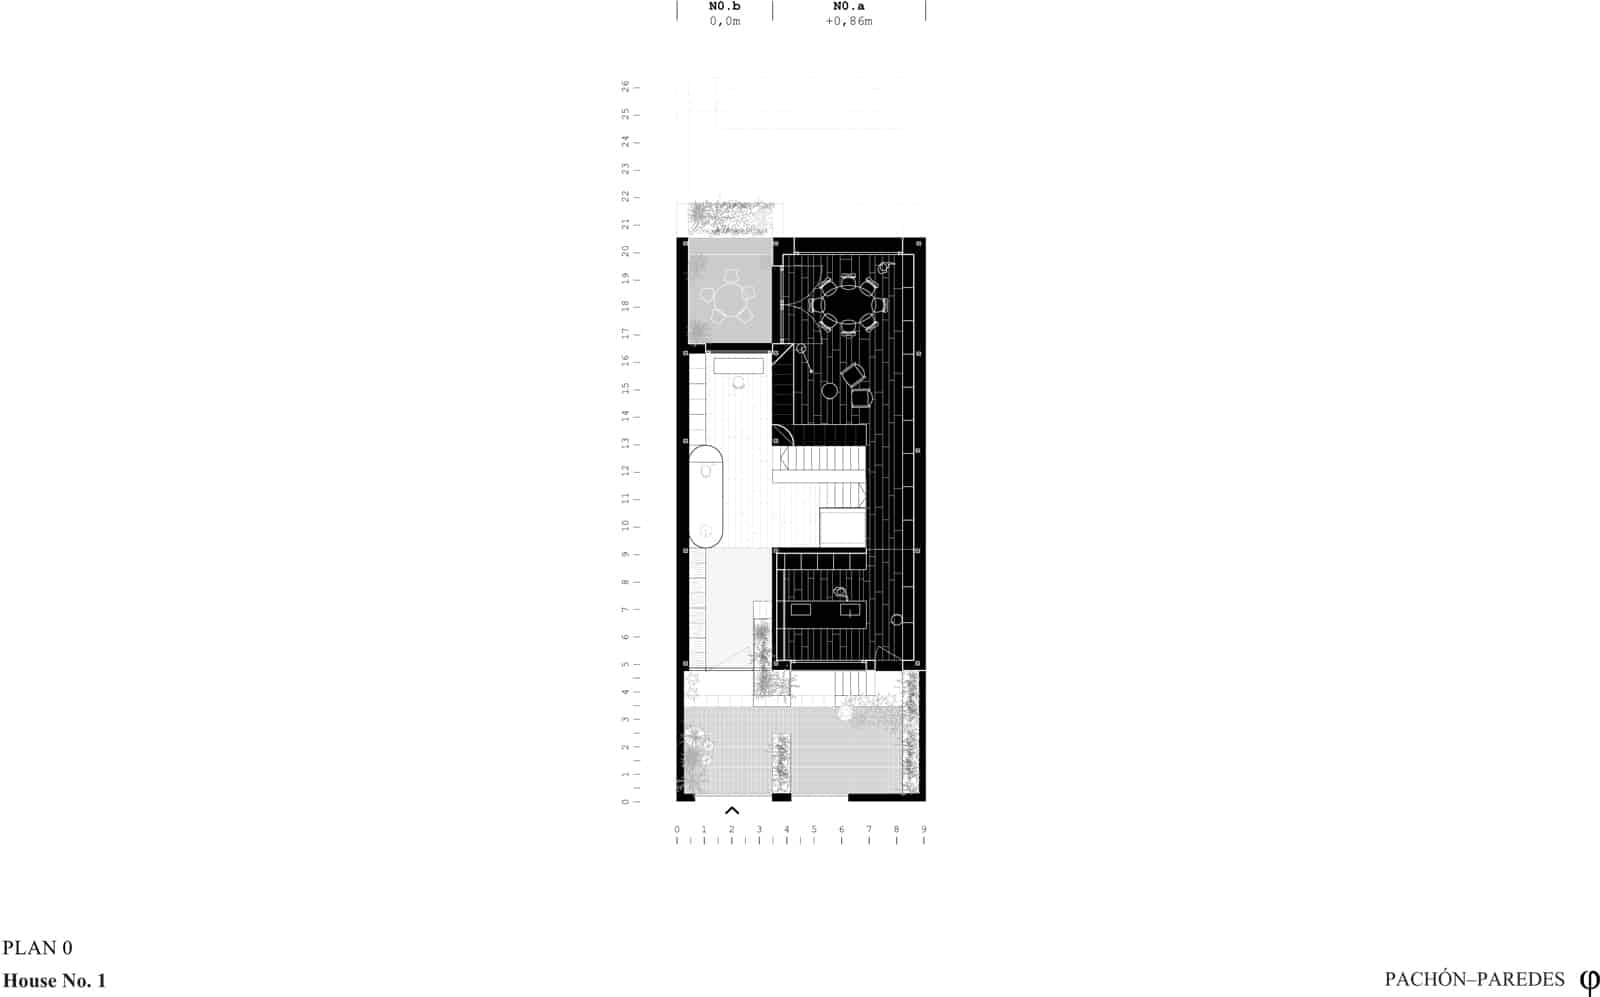 House No. 1  - 20220201 PachonParedes 86centimetros 12 61